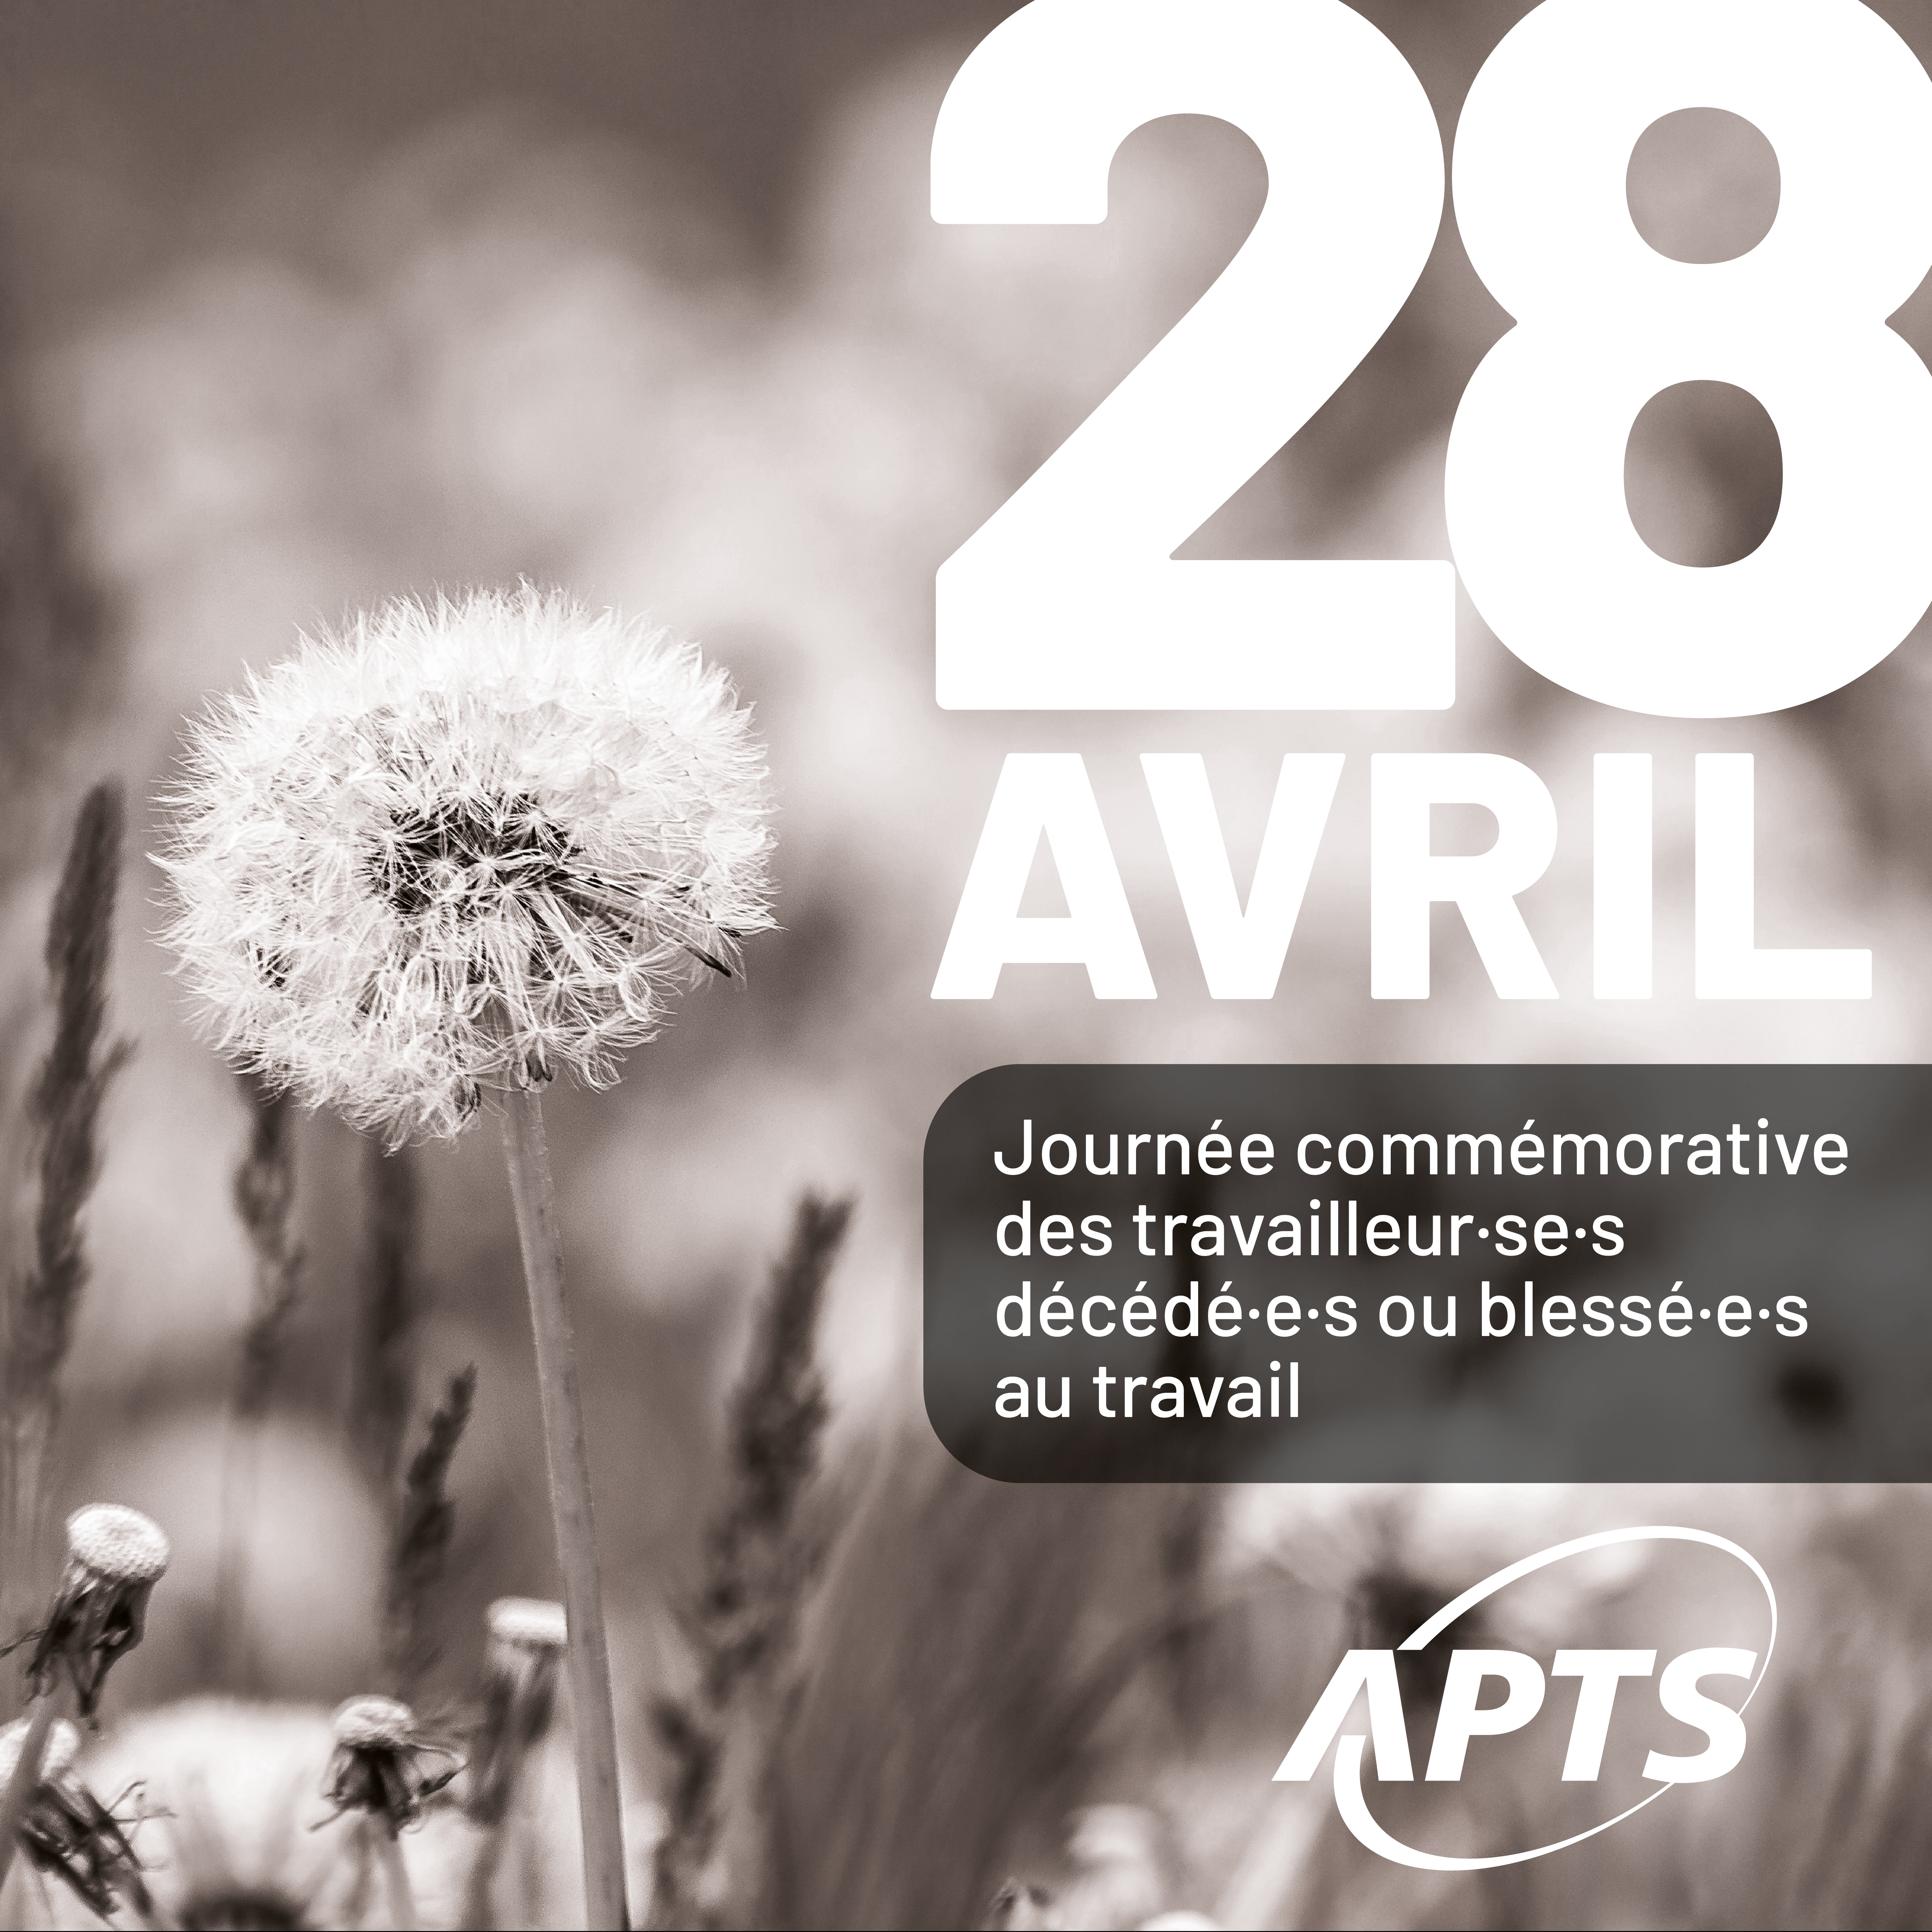 Image 28 avril | Journée de commémoration des personnes blessées ou décédées au travail - APTS